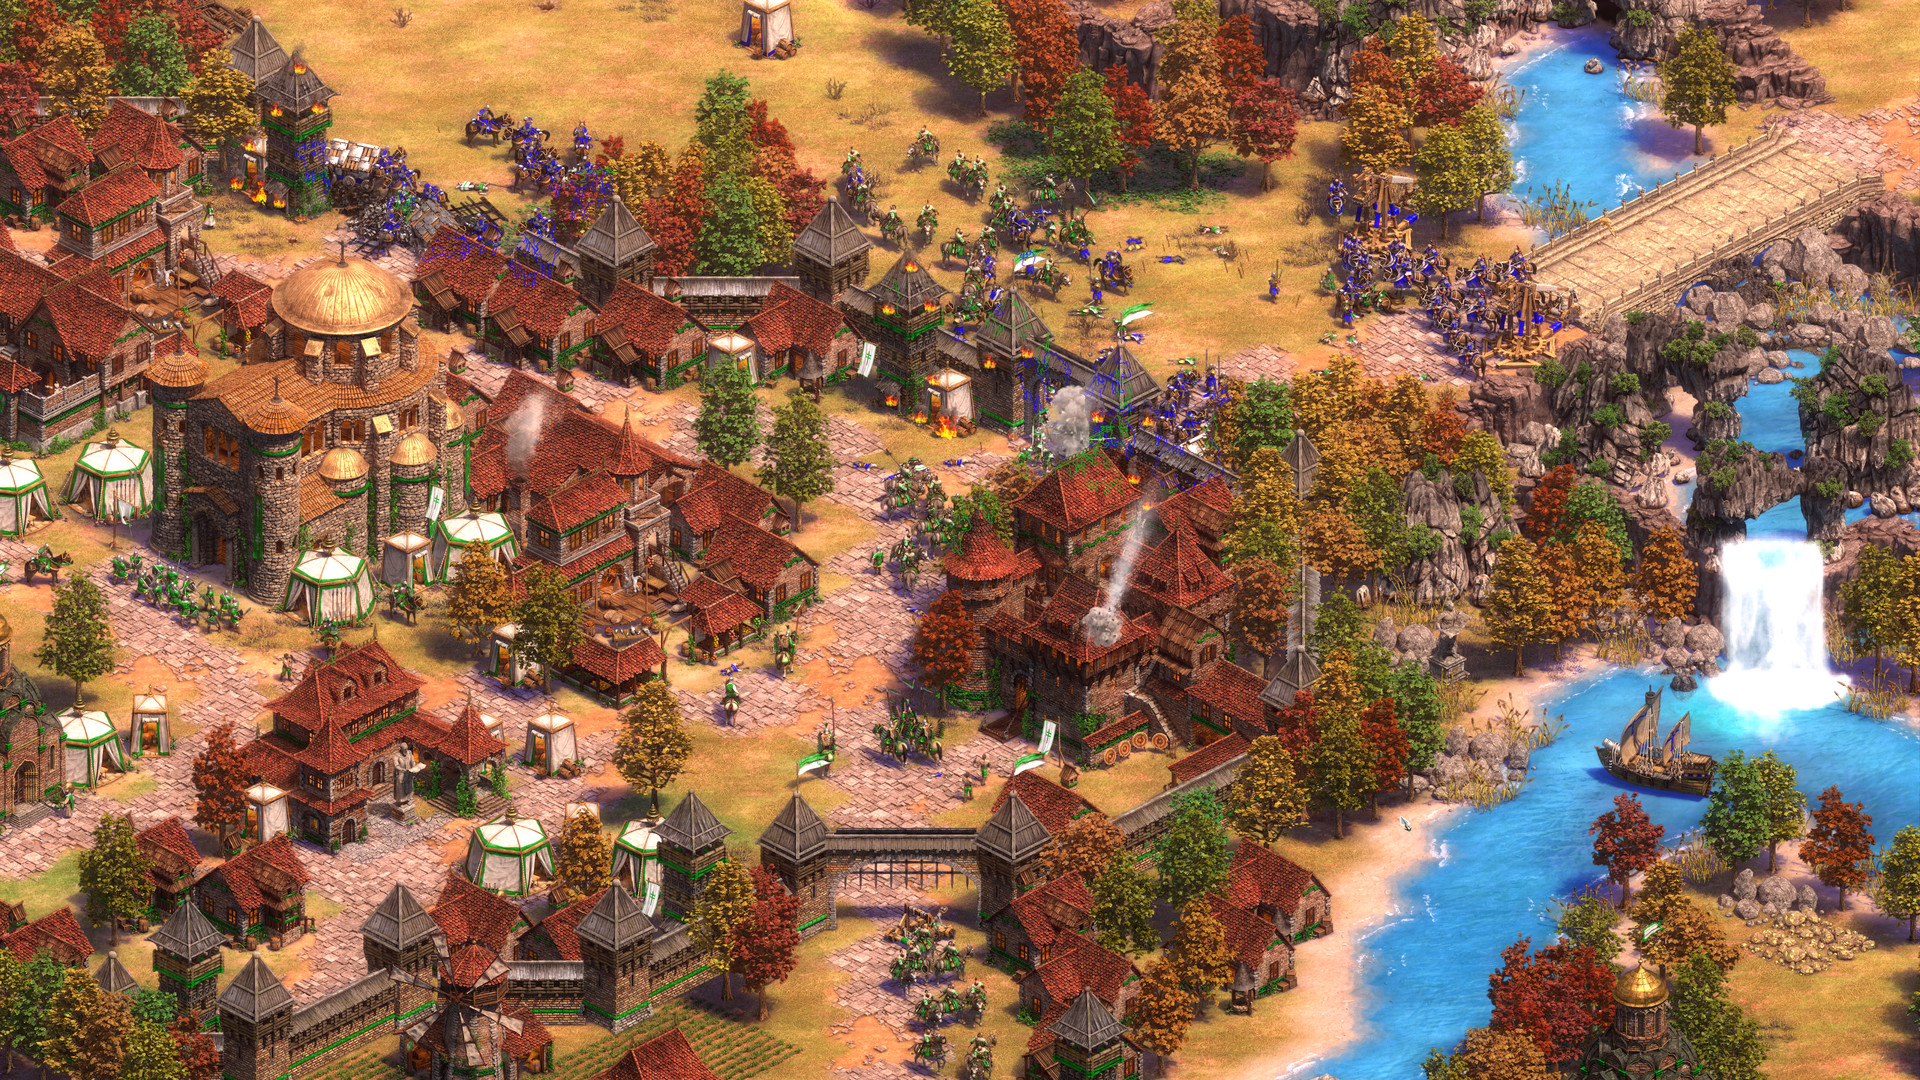 『Age of Empires II』のアジア大会をマイクロソフトが開催へ。日本を含む8地域で2020年第1四半期より約1年にわたりトーナメントが実施予定_002